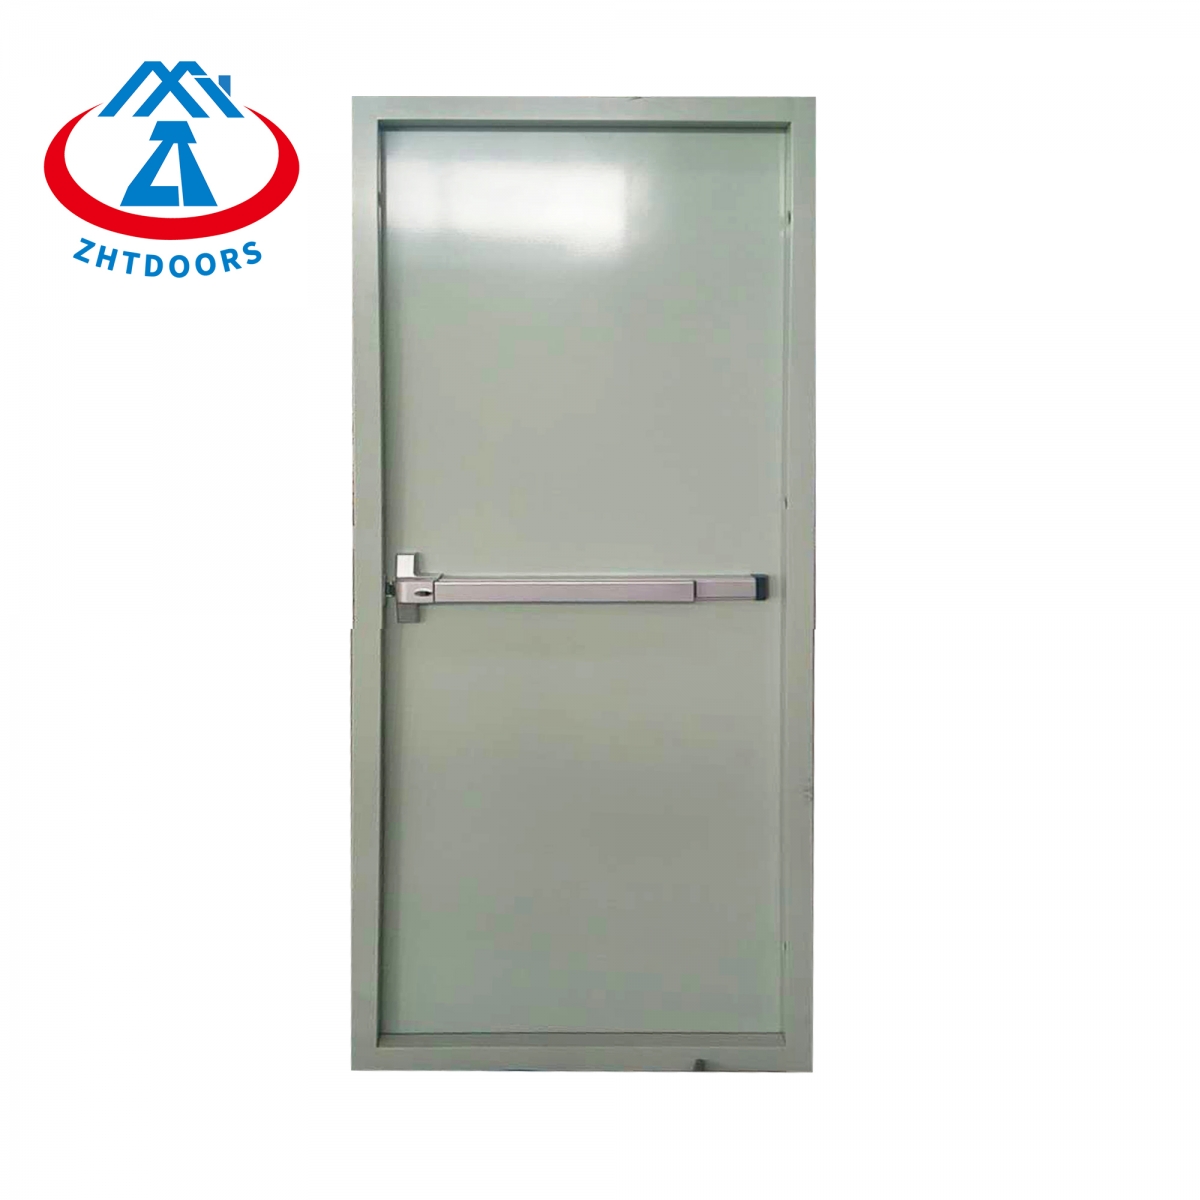 UL Fireproof Door On Wall-ZTFIRE Door- Fire Door,Fireproof Door,Fire rated Door,Fire Resistant Door,Steel Door,Metal Door,Exit Door